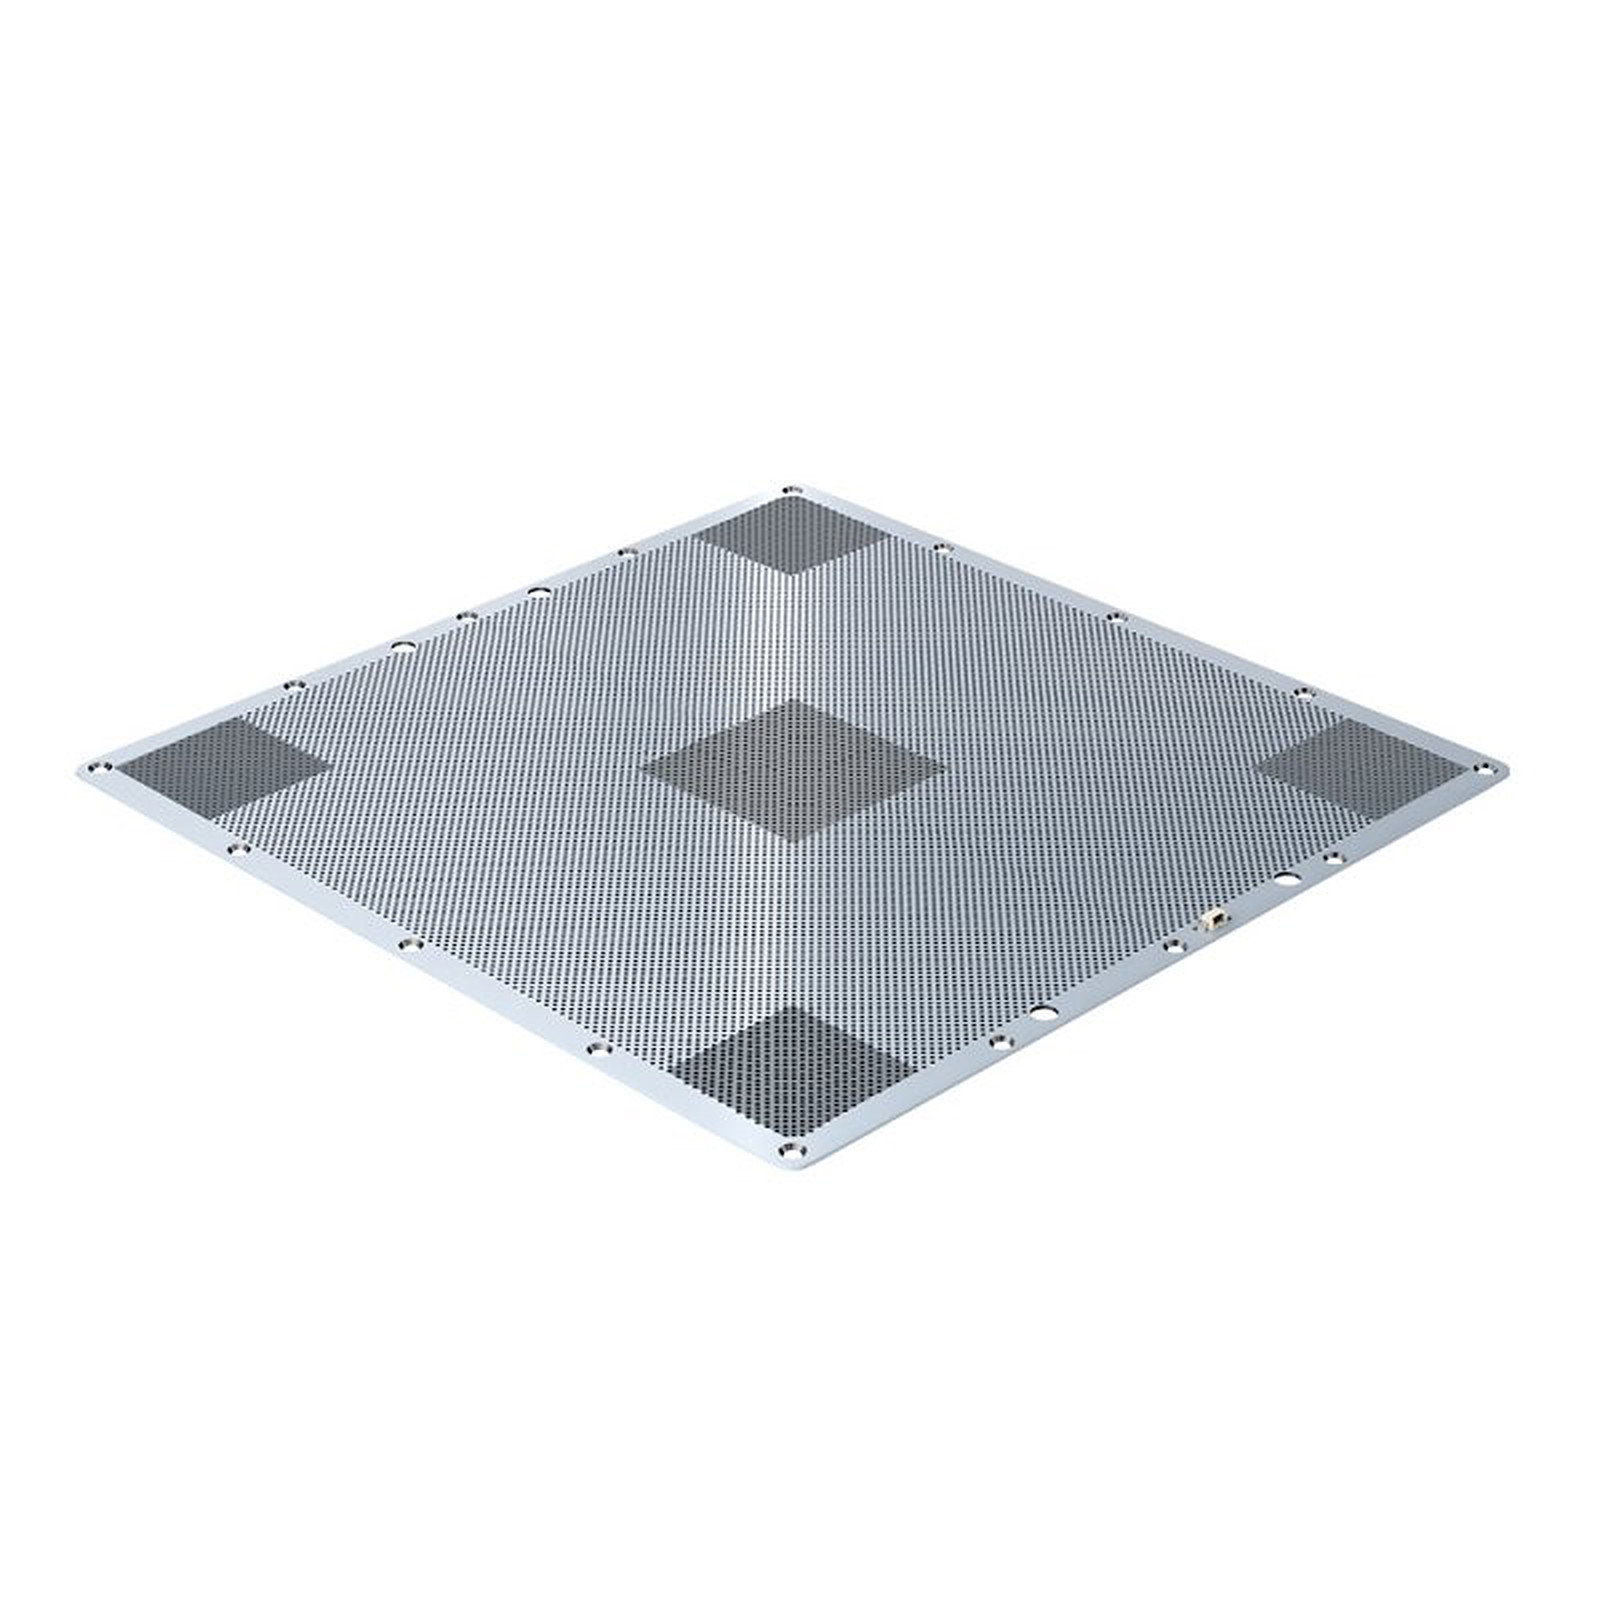 Zortrax Plateau pour M200 - Accessoires imprimante 3D Zortrax